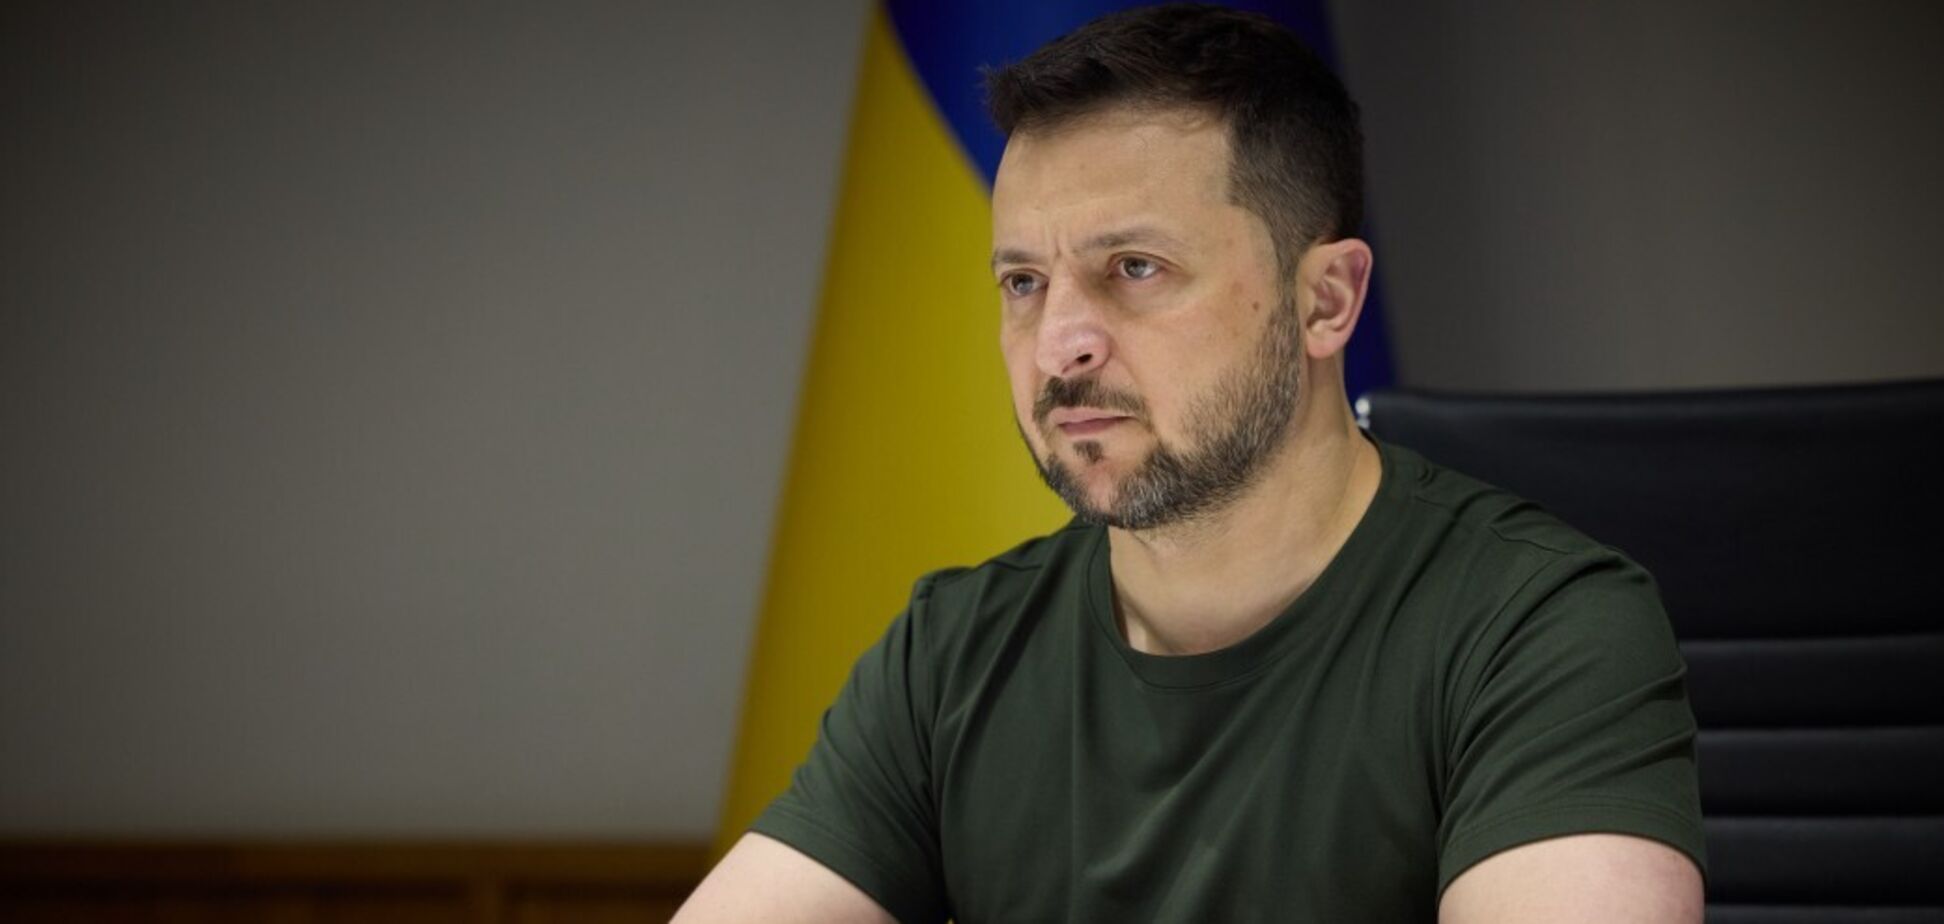 'Это война технологий': Зеленский указал на вызовы для Украины и объяснил, что является 'номером один' в войне. Видео